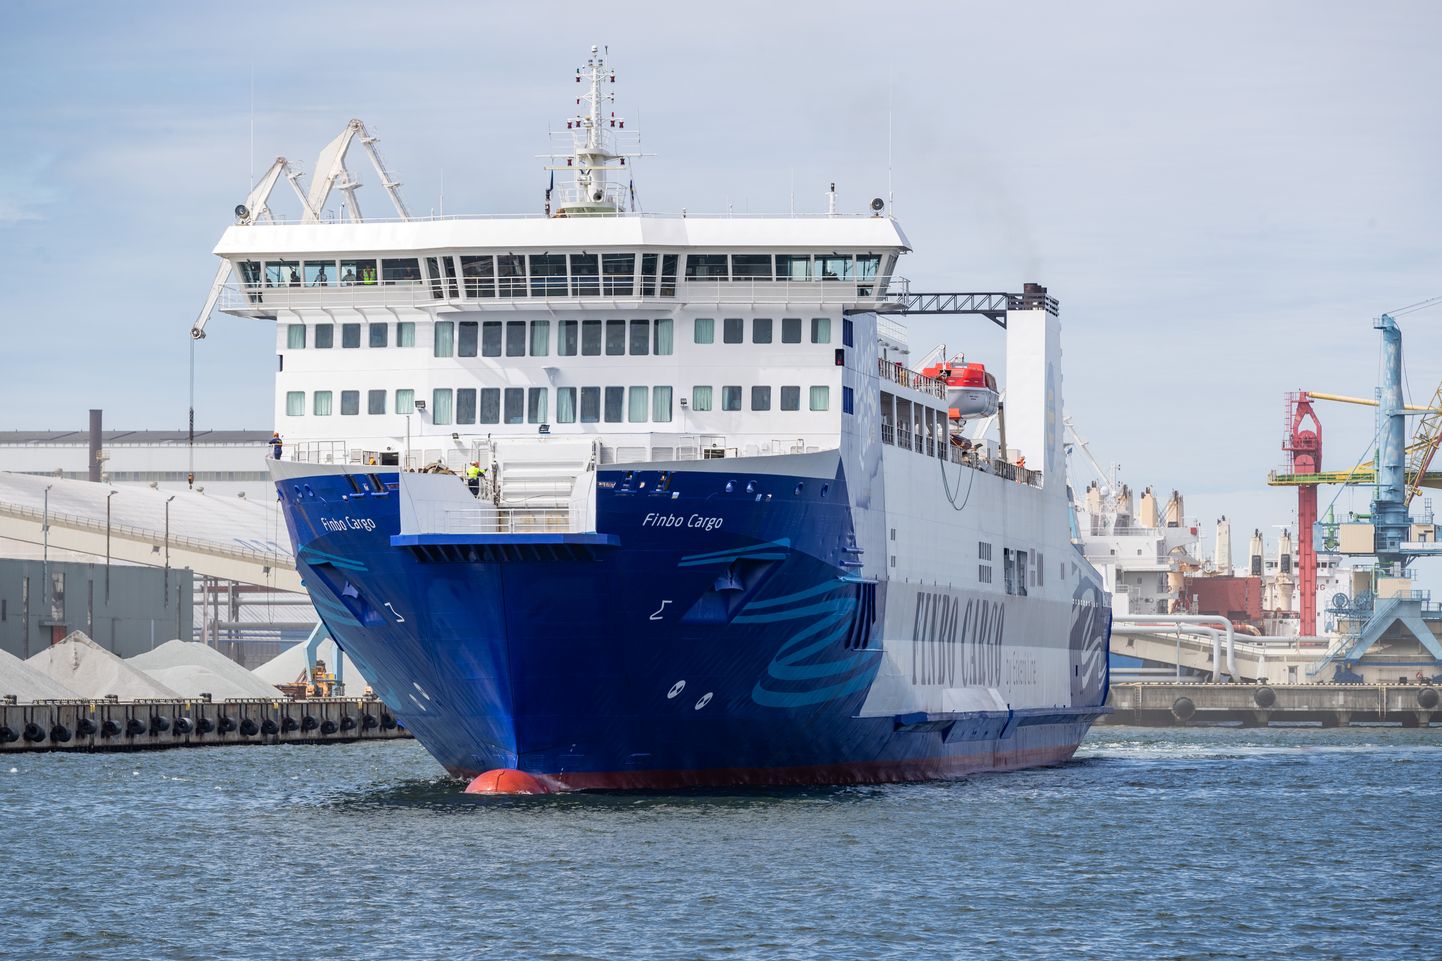 Первый рейс Finbo Cargo, нового корабля Eckerö Line, в порт Мууга.